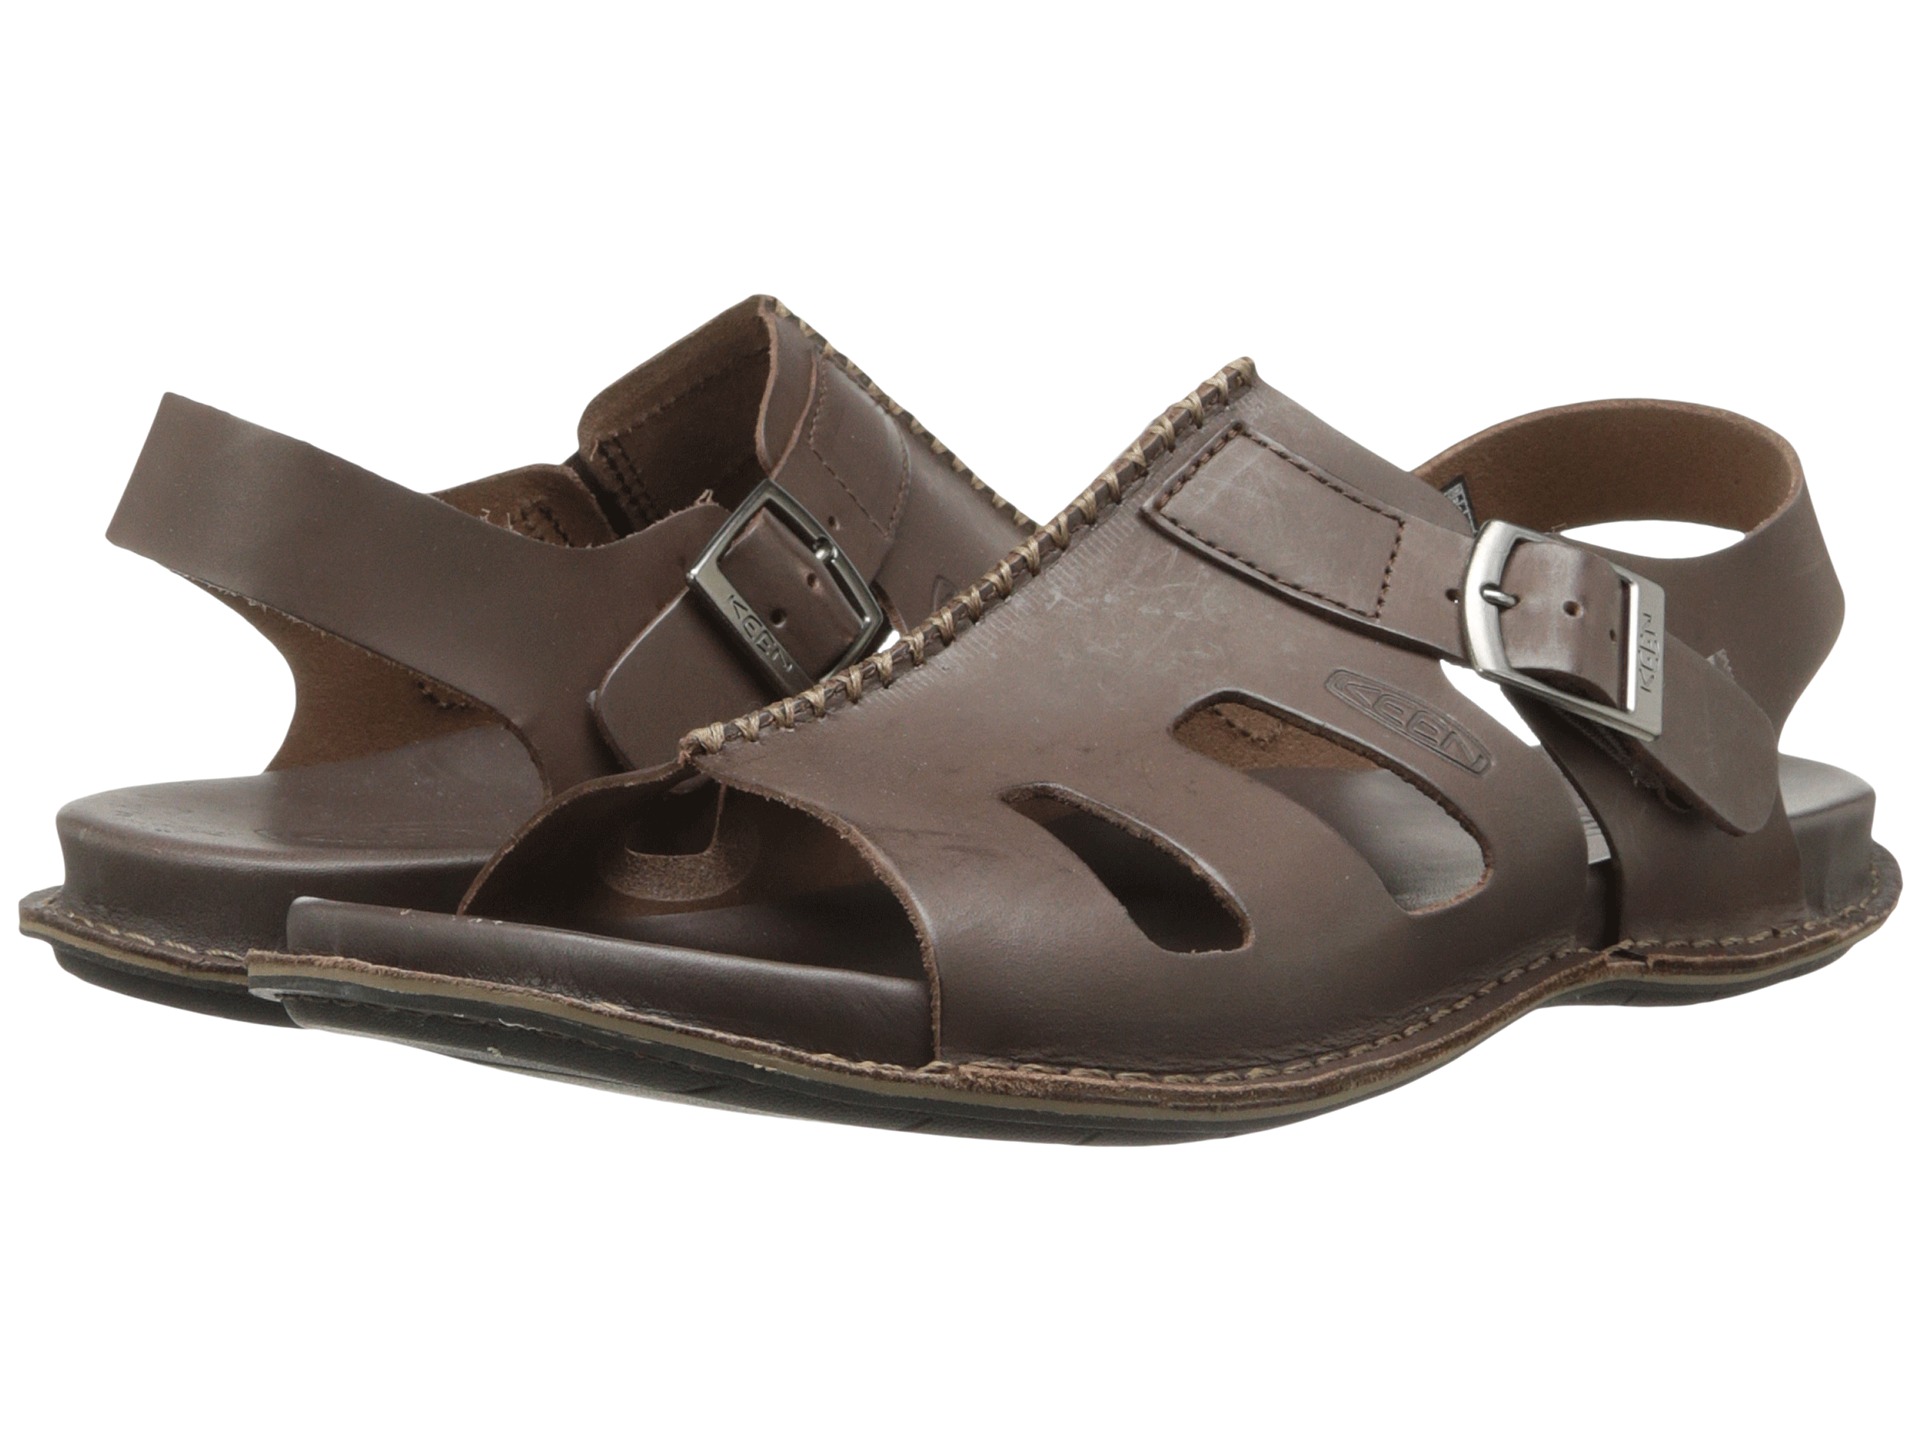 Keen Alman Sandal, Shoes | Shipped Free at Zappos